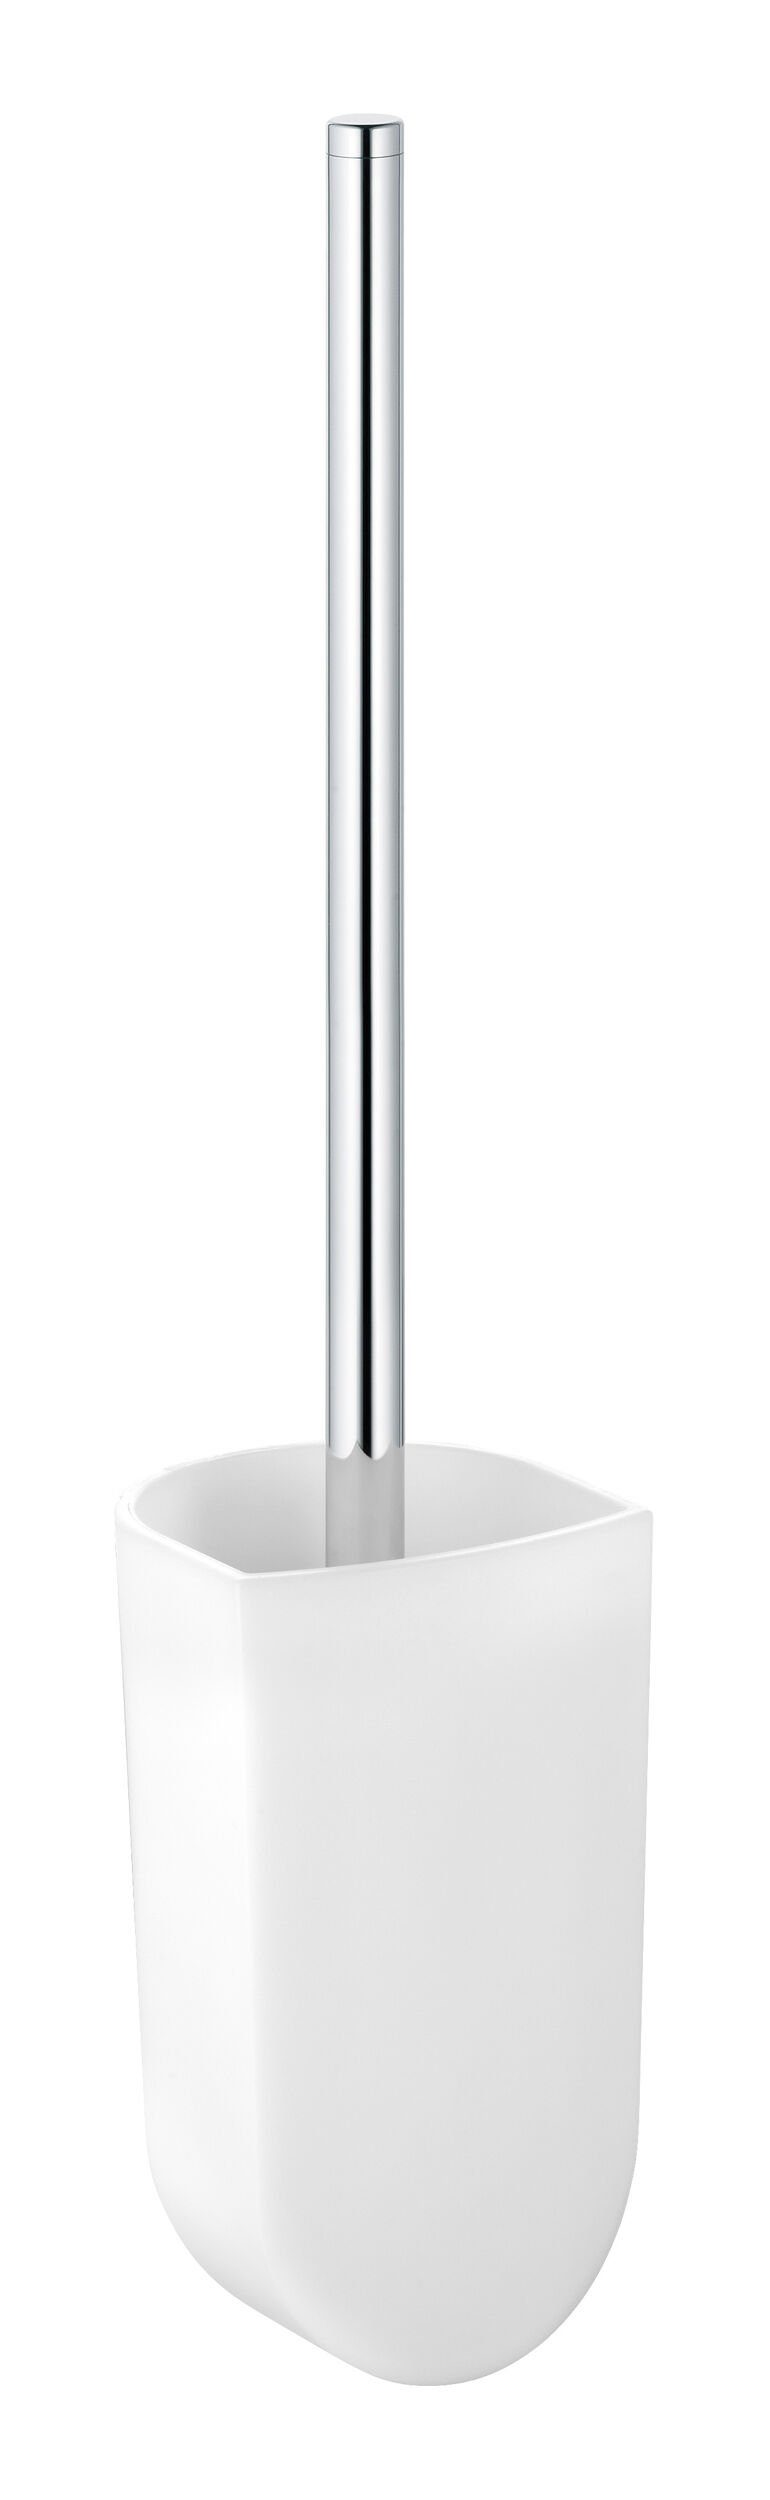 Keuco WC-Garnitur Elegance, Toilettenbürstengarnitur mit Echtkristall-Einsatz - Verchromt | Toilettenbürstenhalter